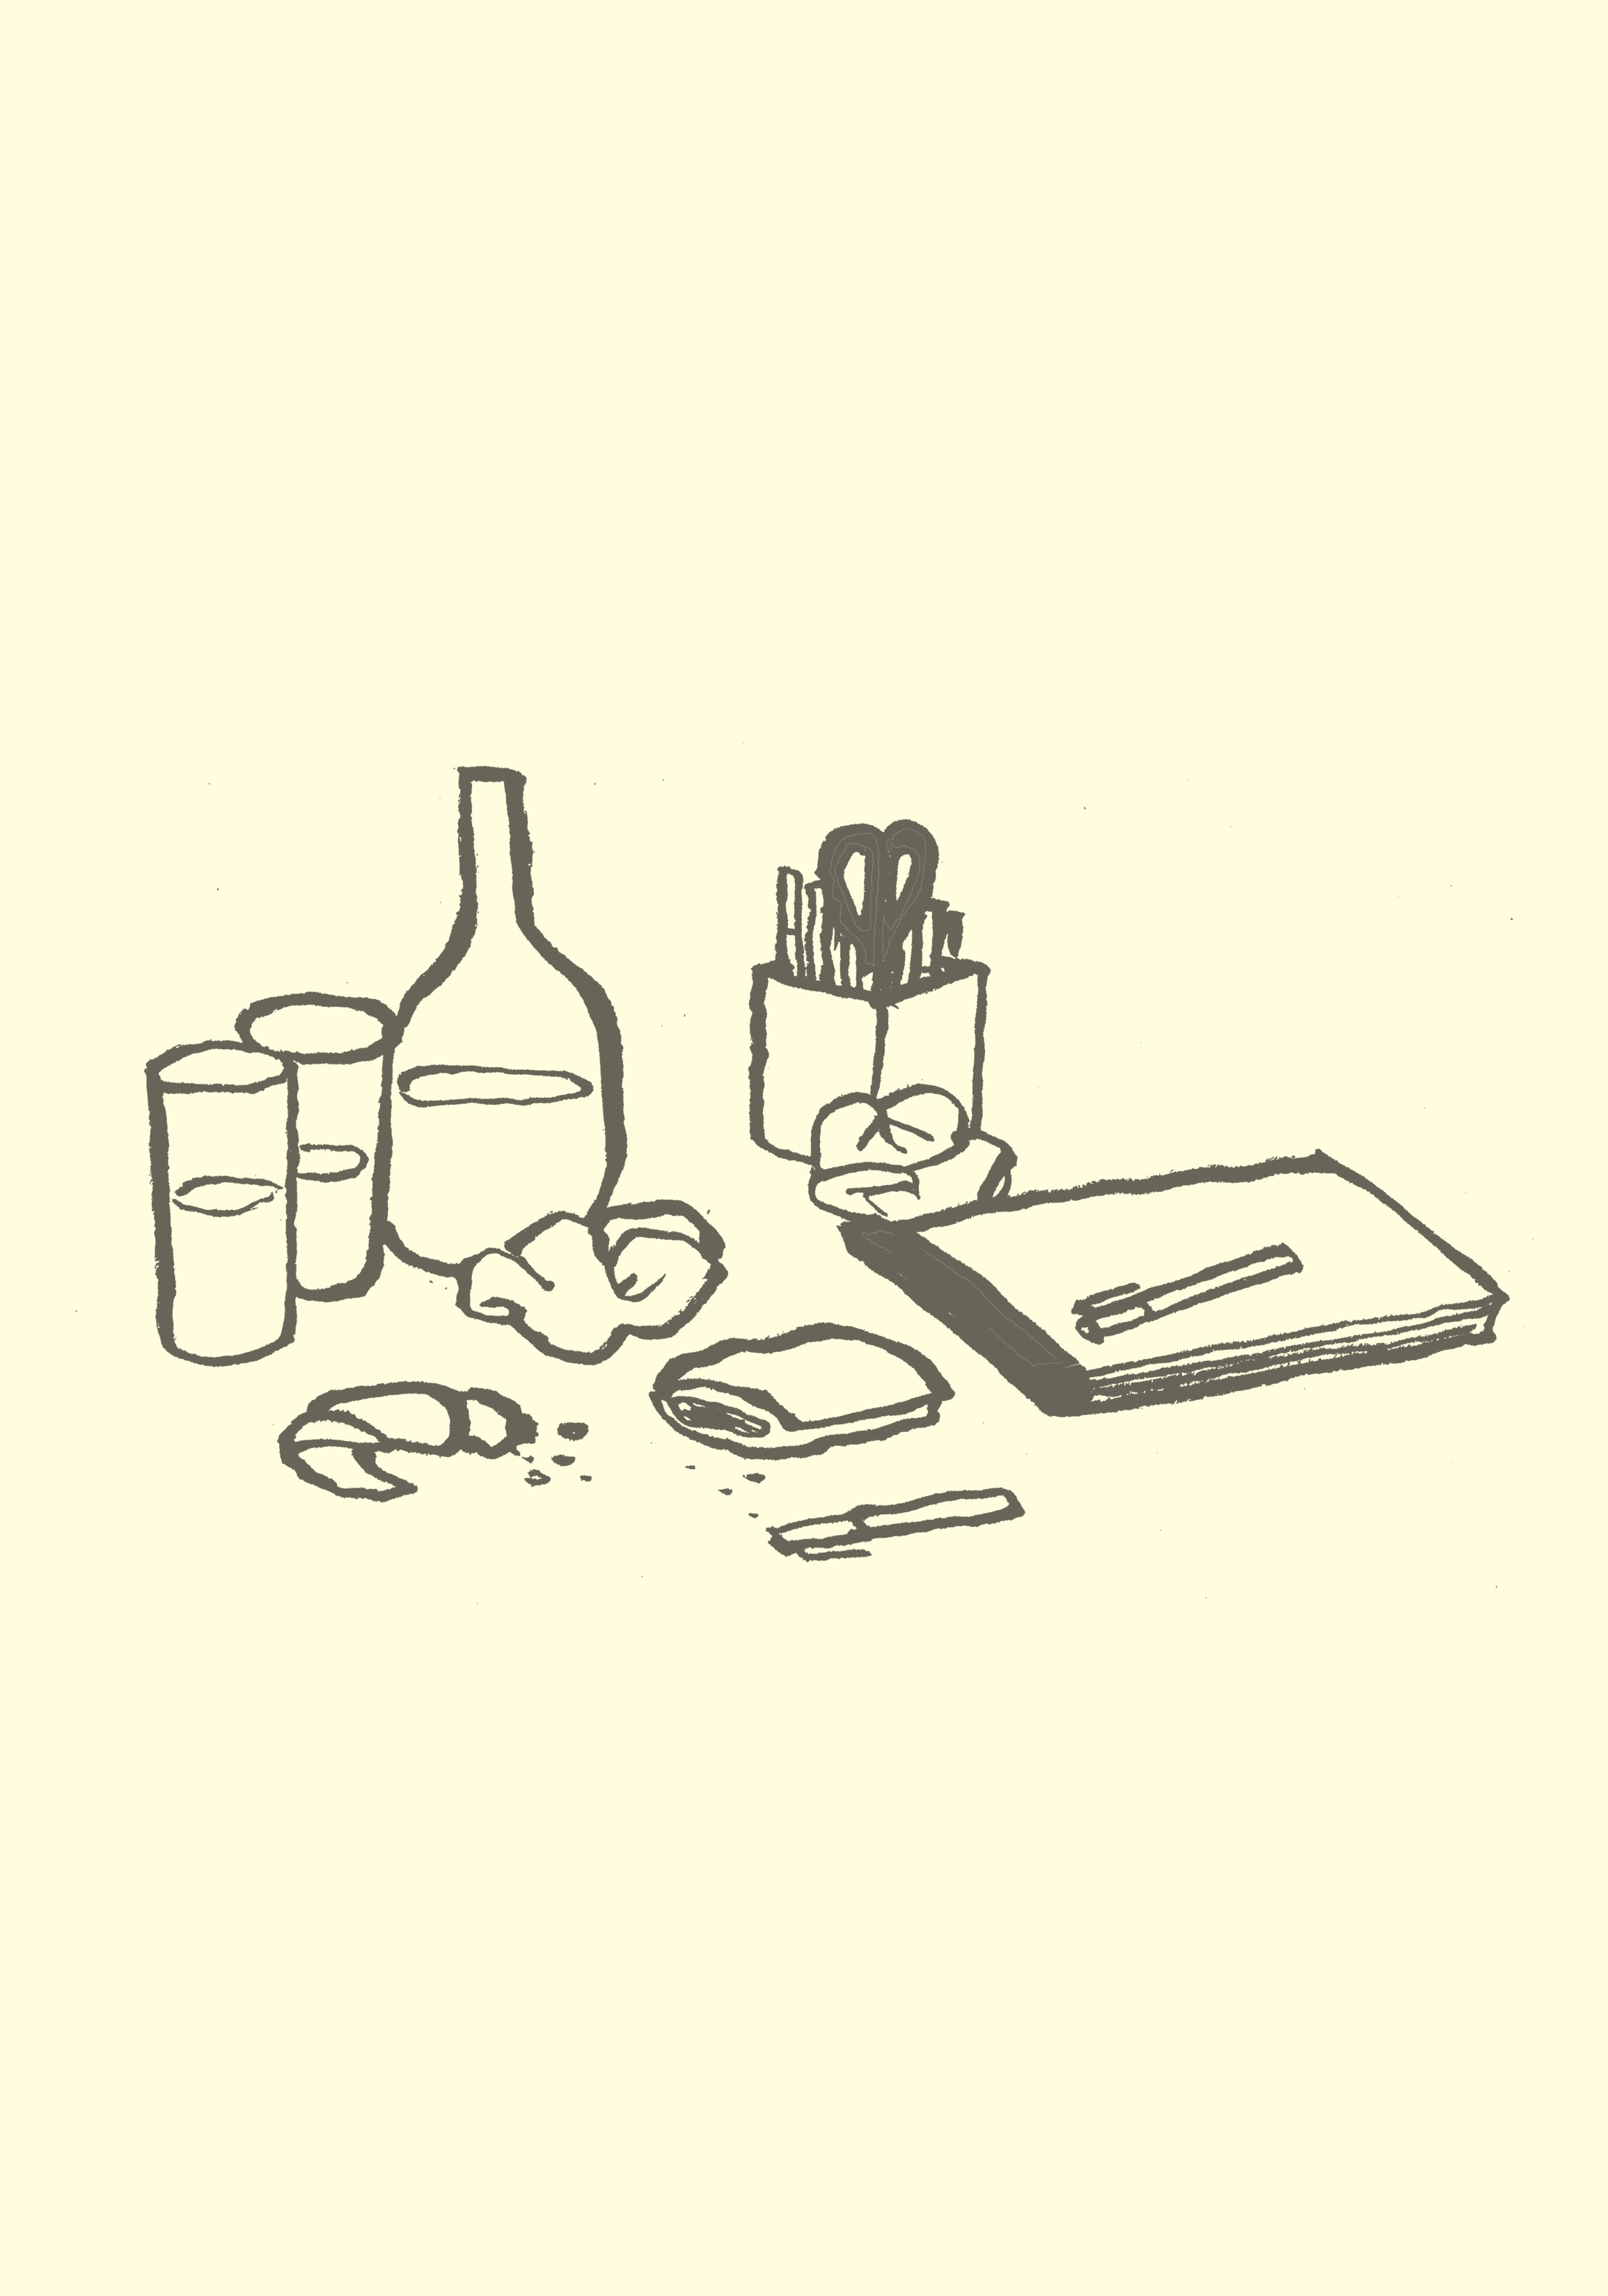 Eine Karikatur, welche die Reste einer Sitzung, einschließlich Imbisse, Stifte, Schreibensauflagen und Getränkgläser zeigt.